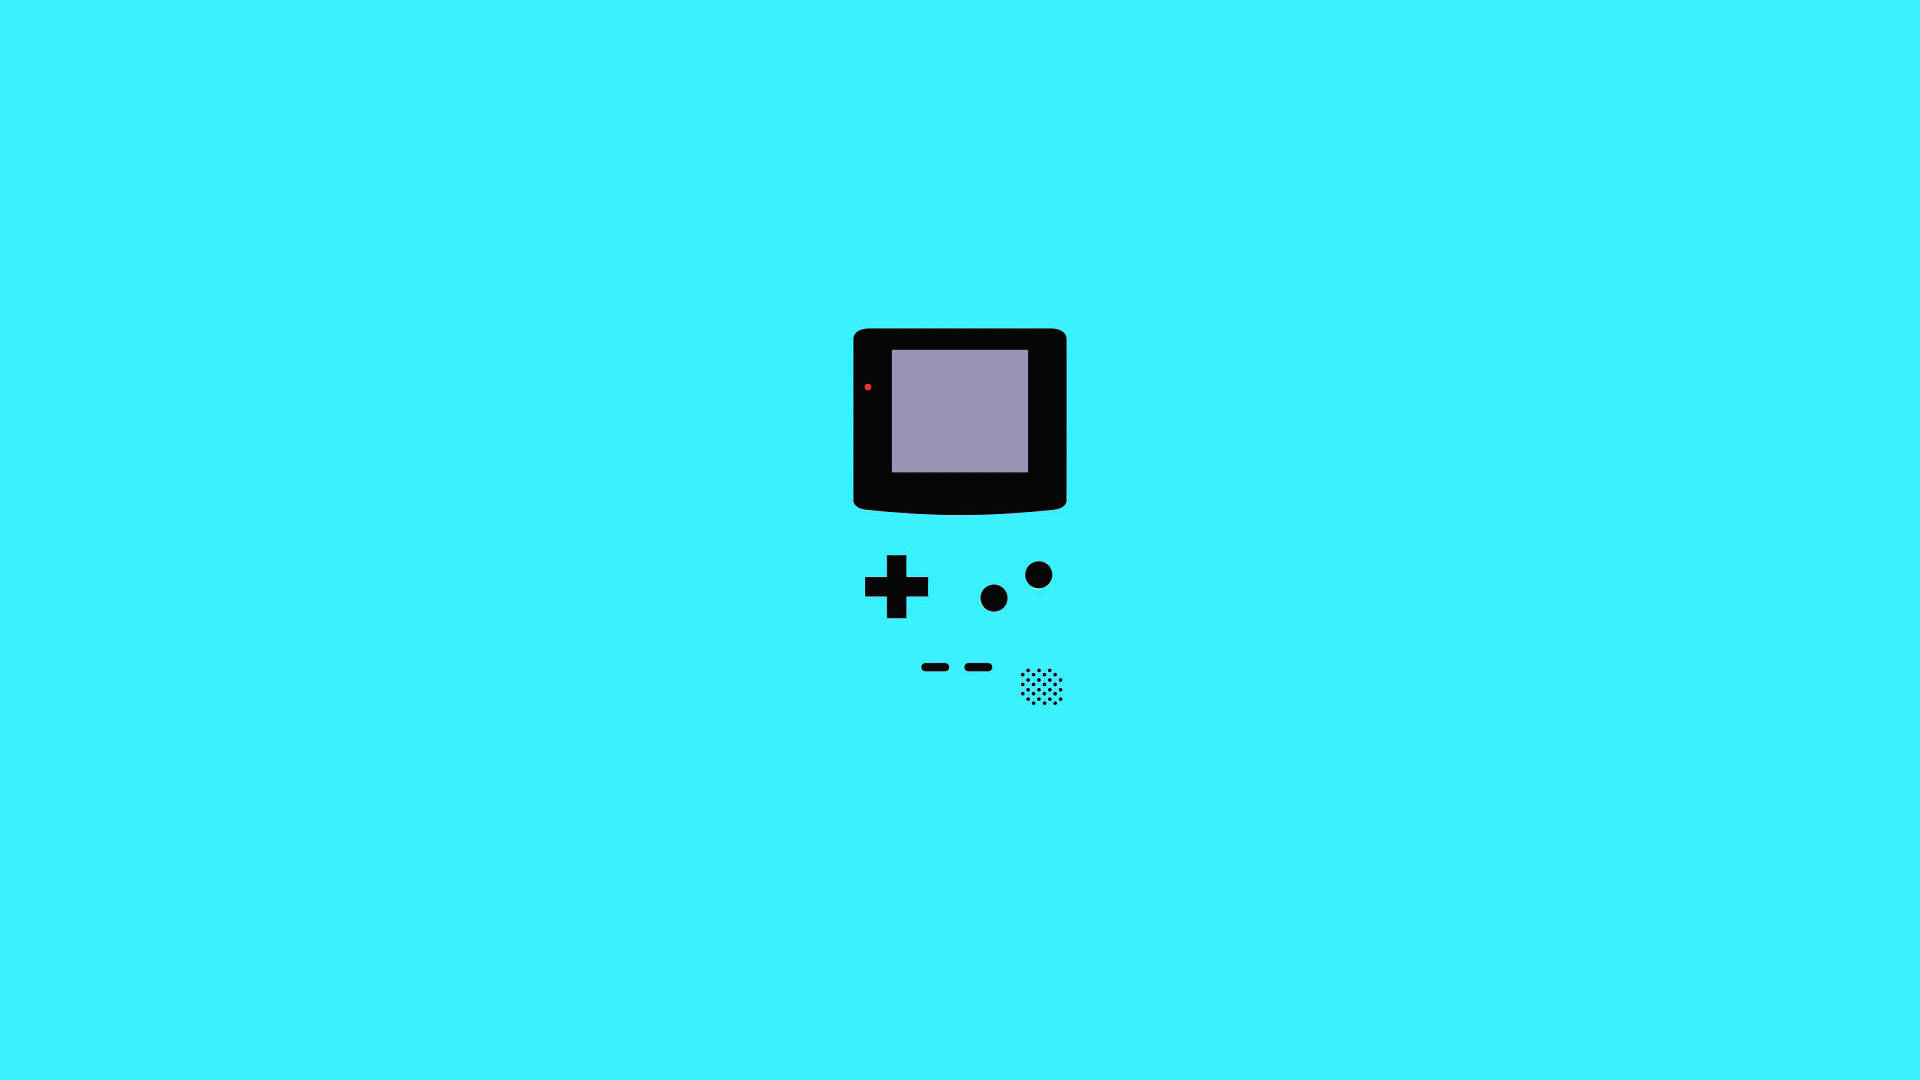 Retro Gaming Nostalgia With Blue Game Boy Color